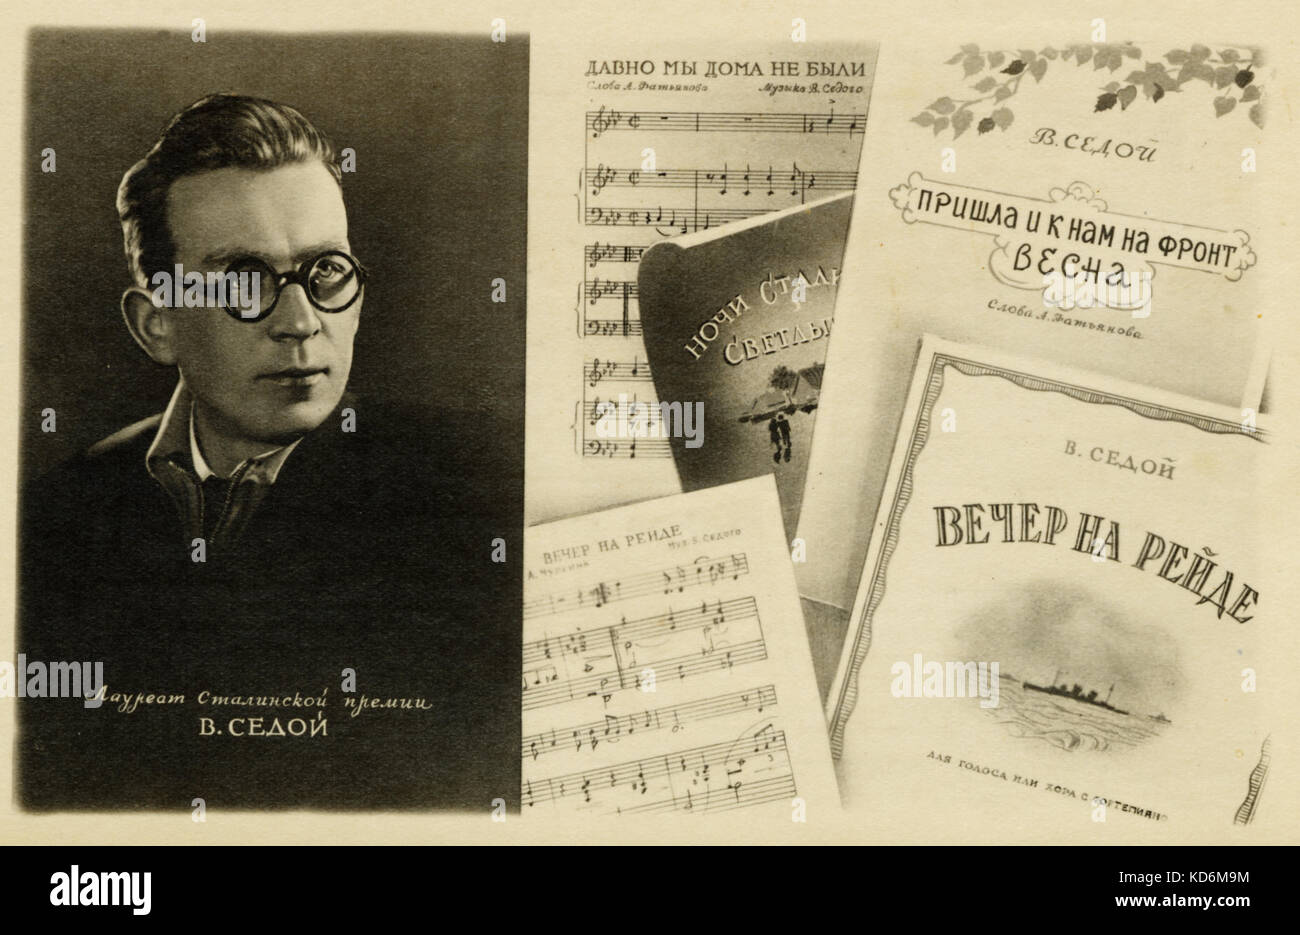 C. Sedoy / Sedoi - compositeur soviétique. A écrit la musique pendant la Seconde Guerre mondiale. Carte postale imprimée à Moscou, 1948 Banque D'Images